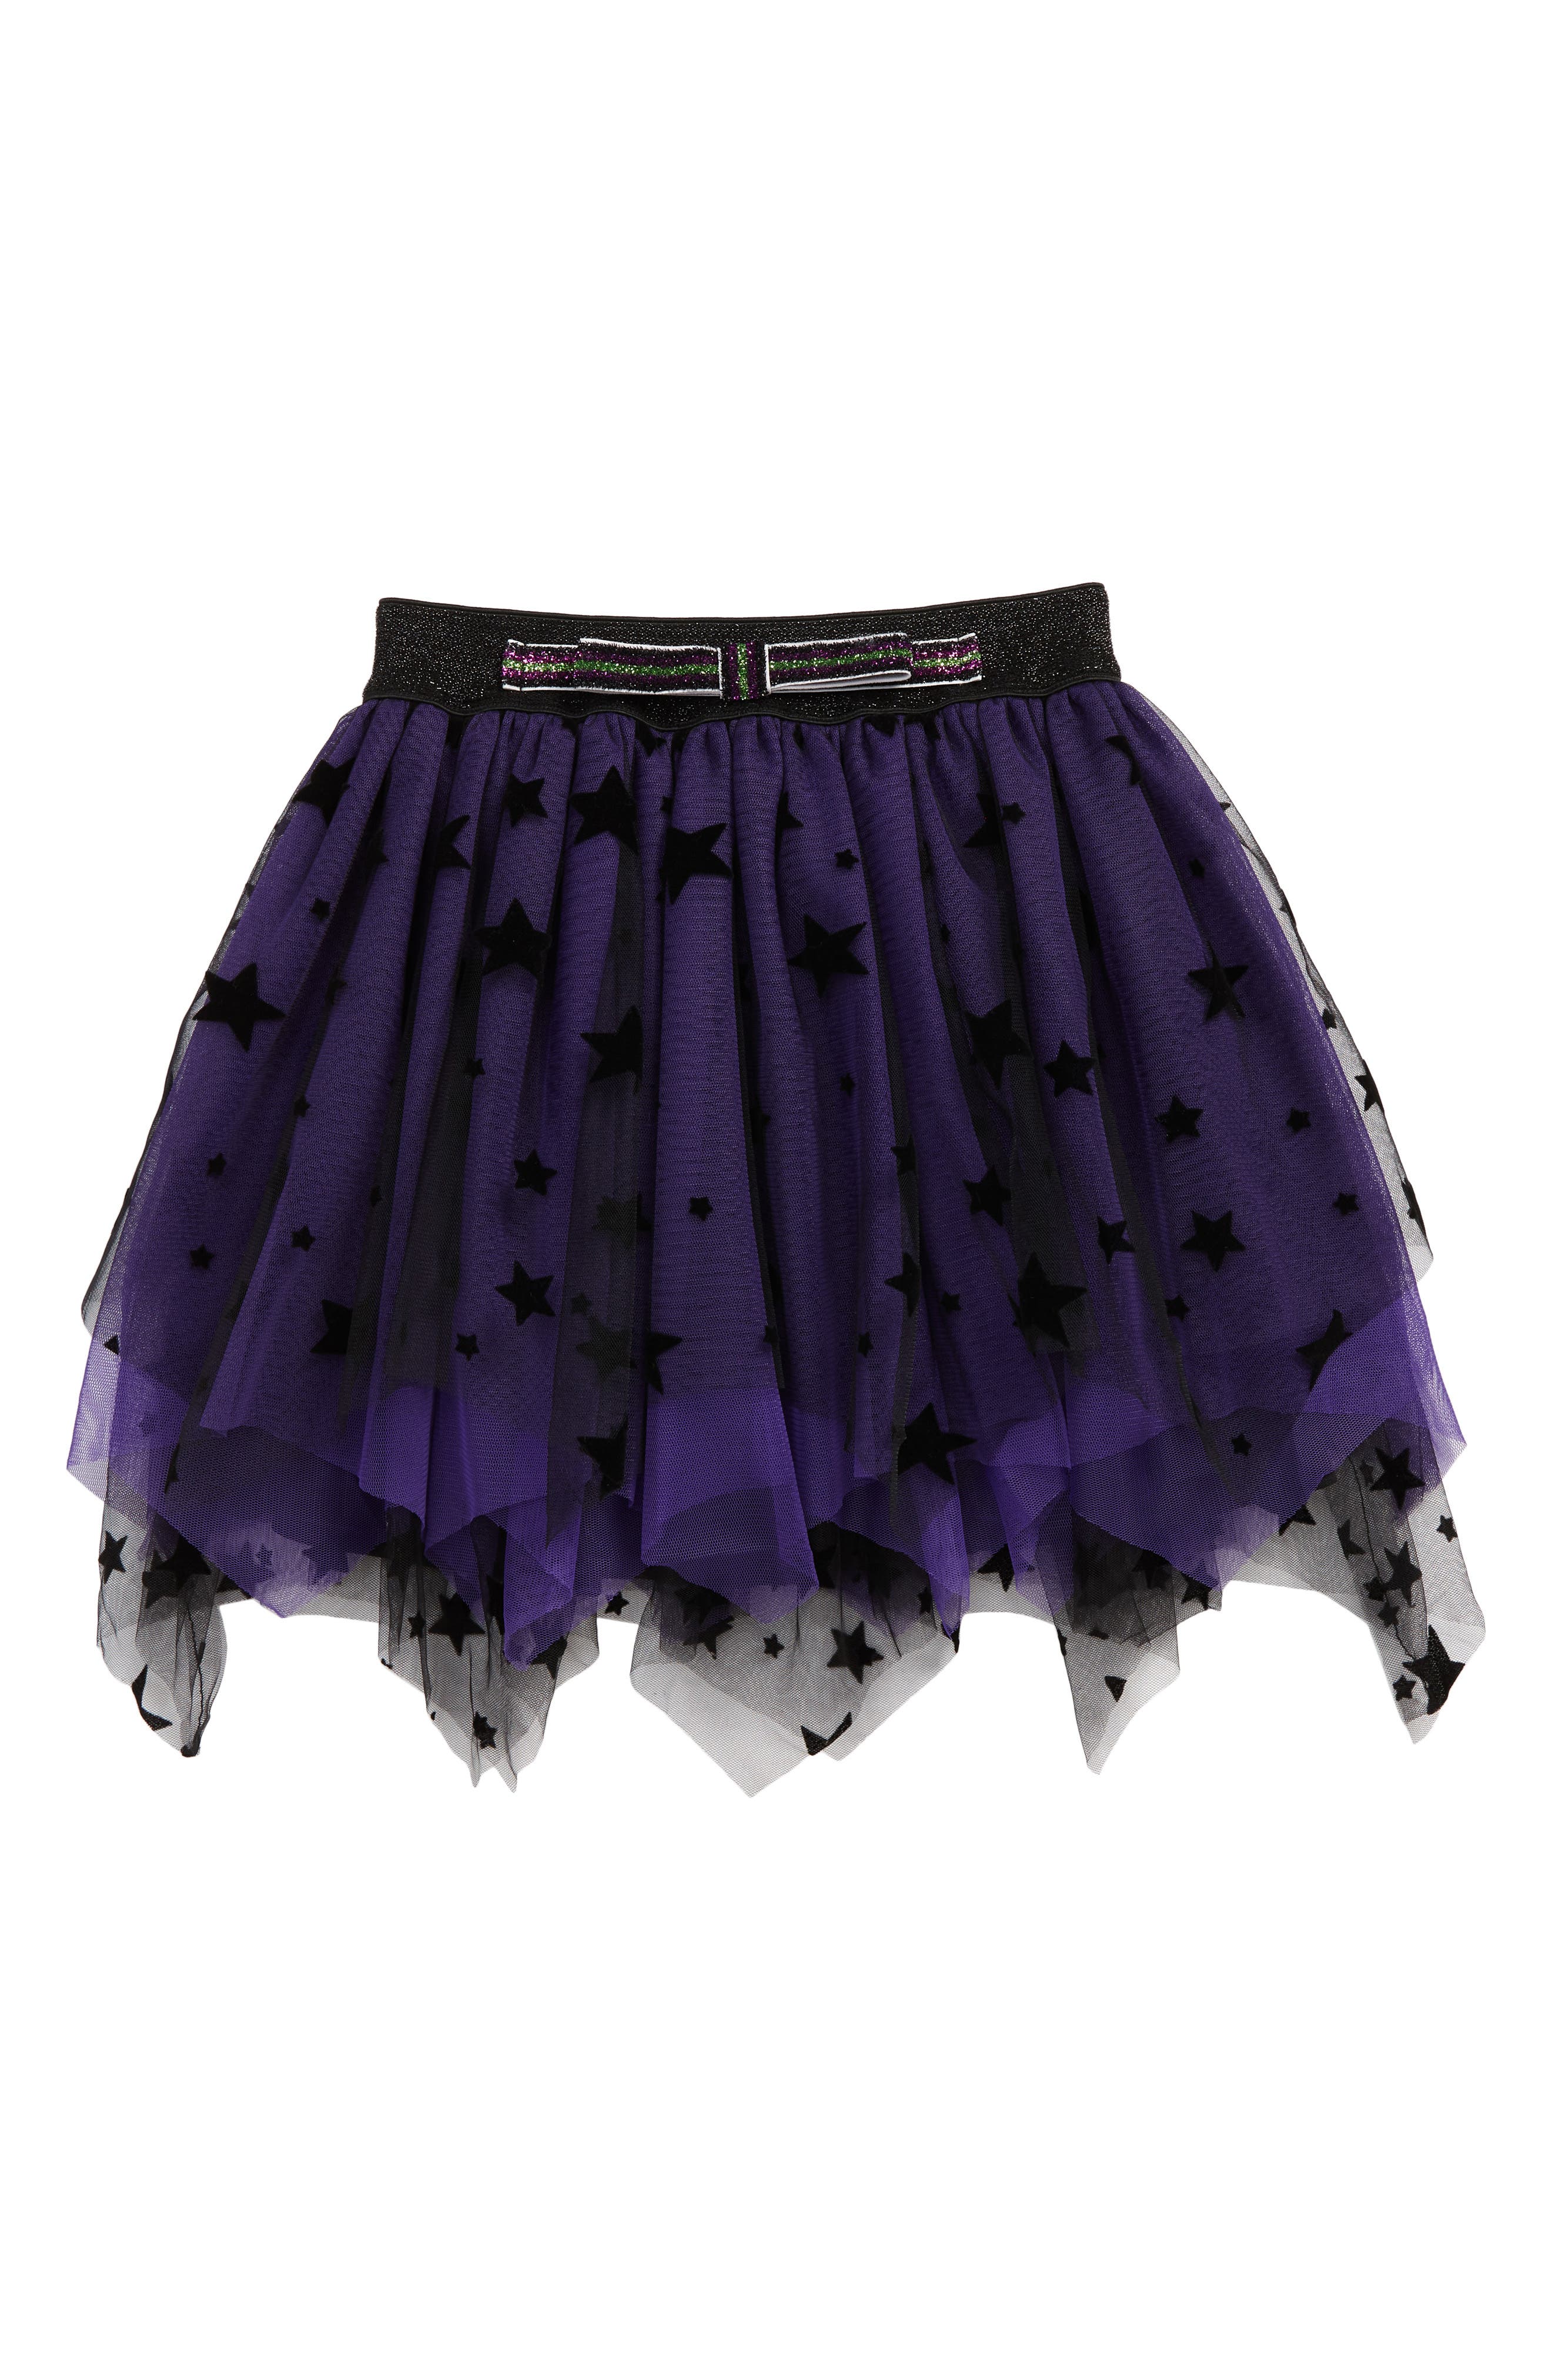 Girls' Purple Skirts 2T-6X: Print 